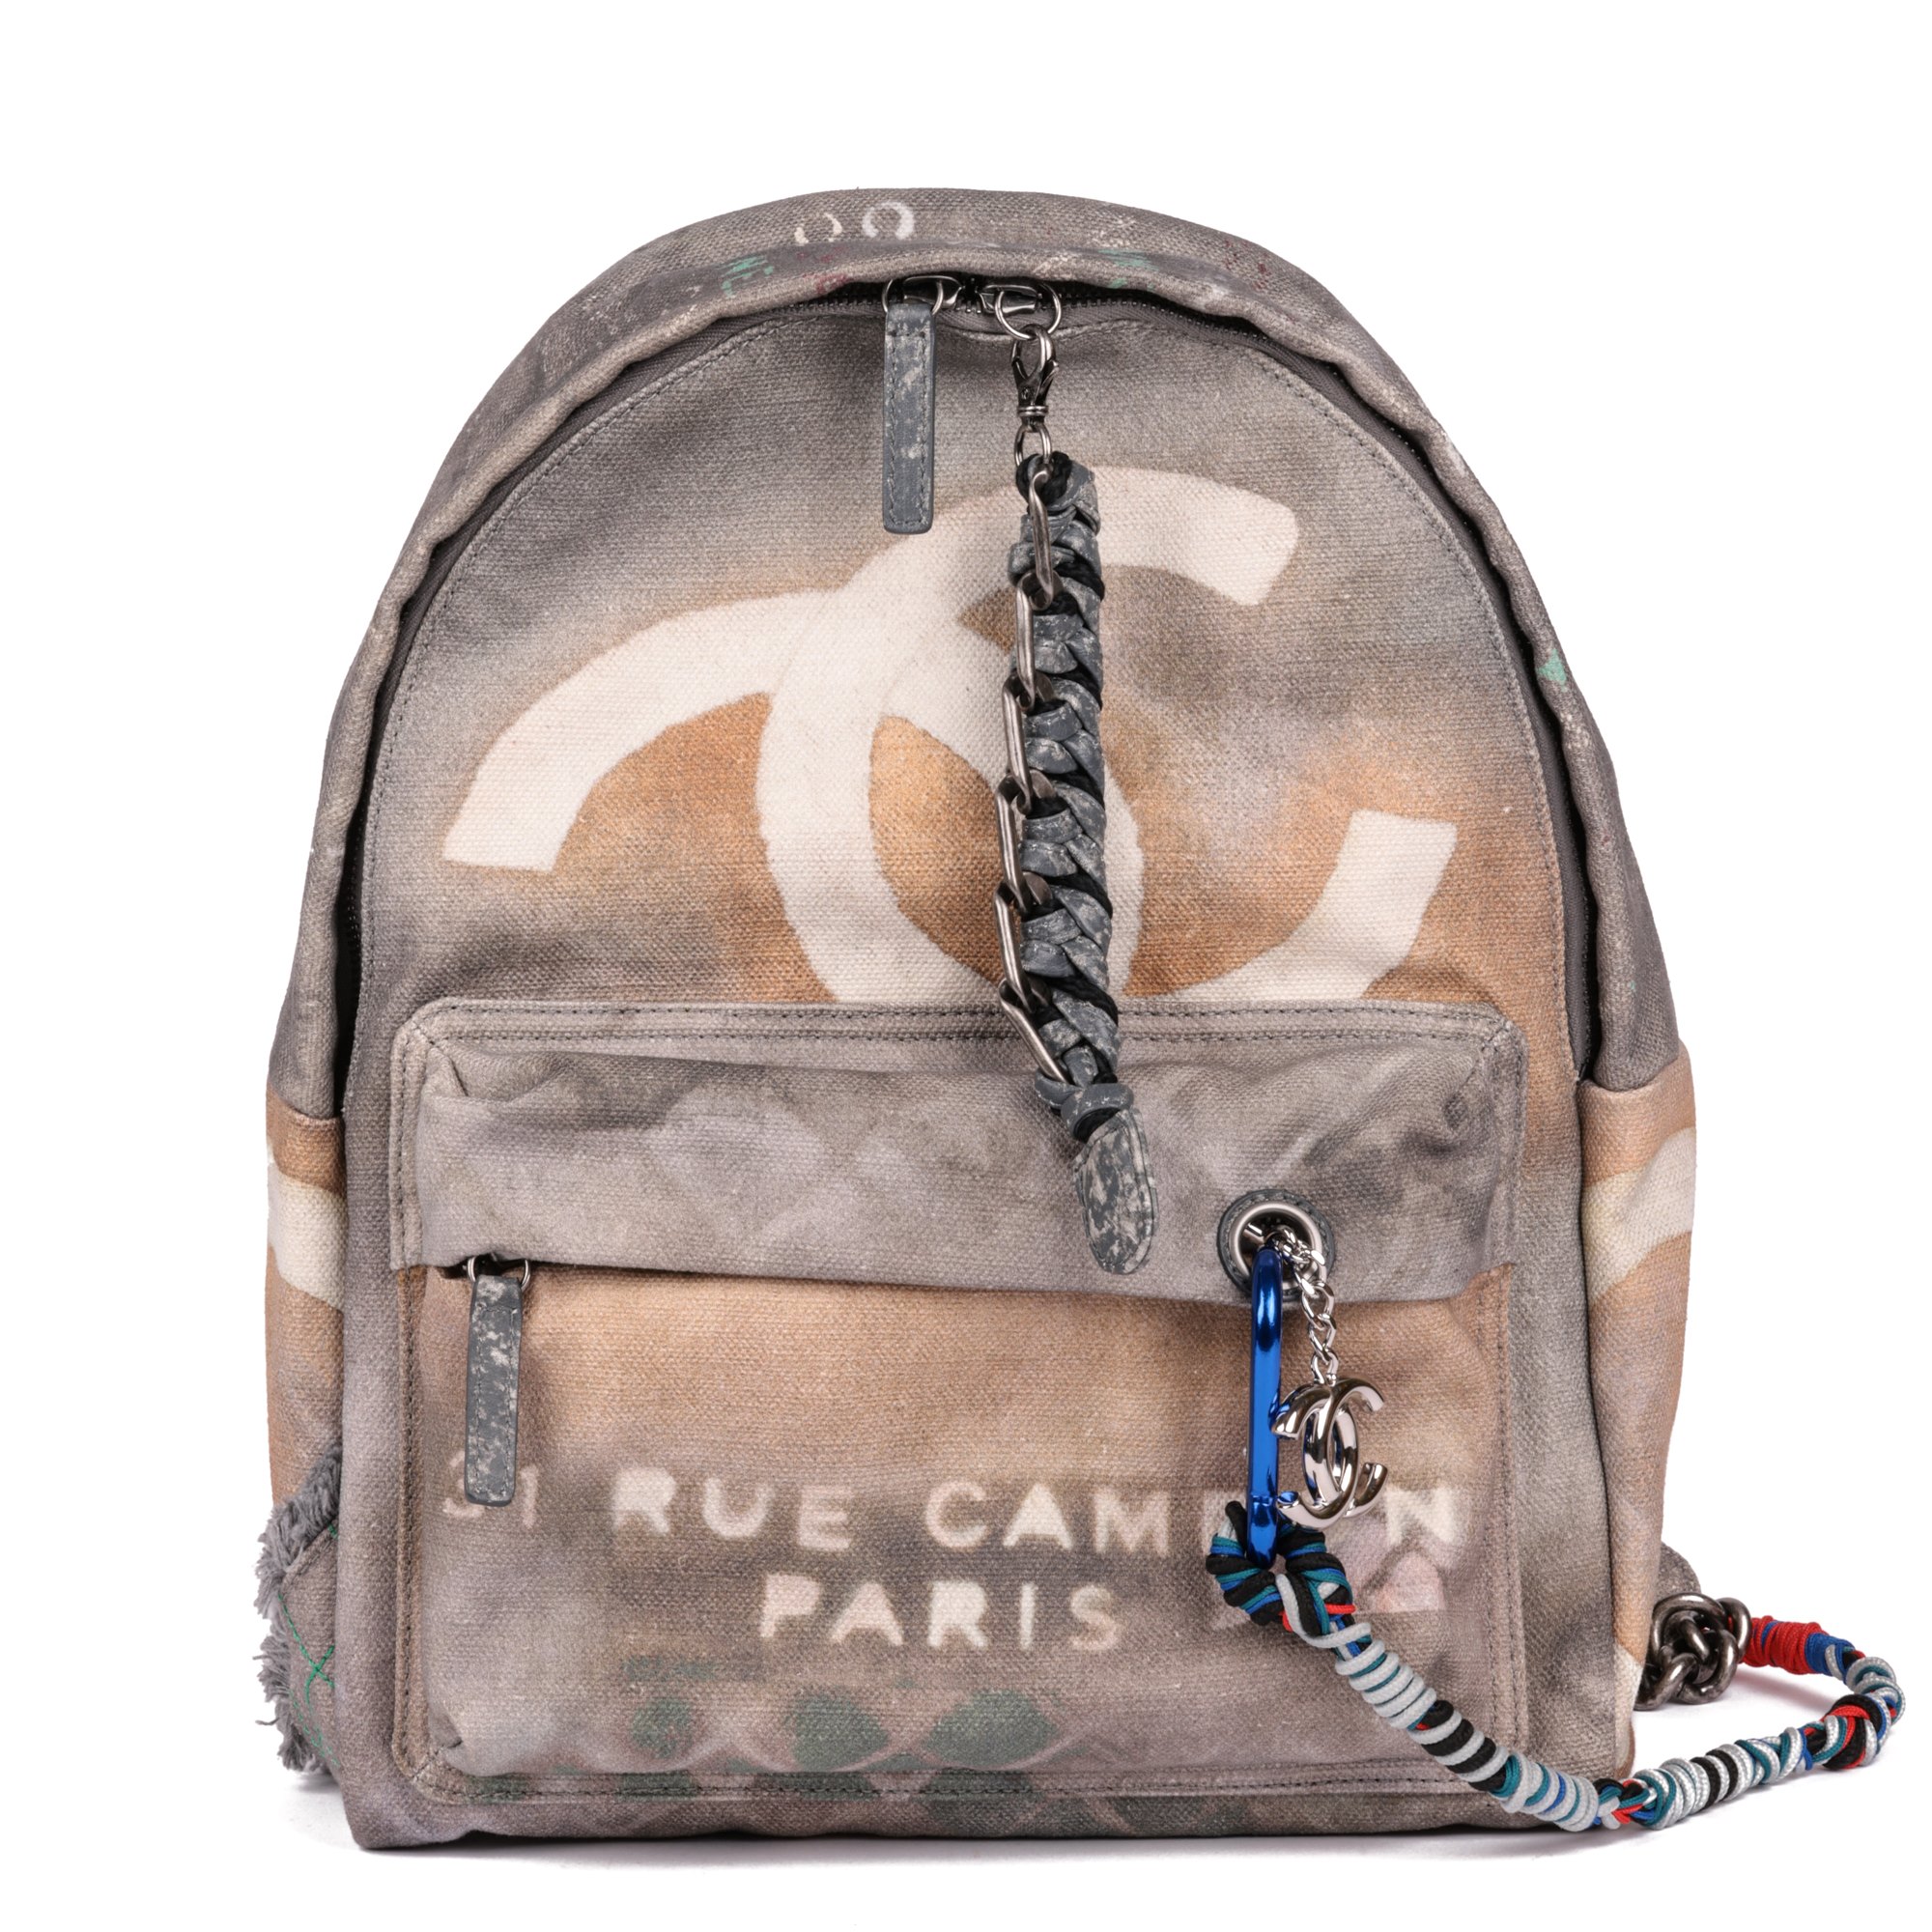 Aplicar código postal cinturón Chanel Medium Graffiti Backpack 2014 JJLG112 | Second Hand Handbags